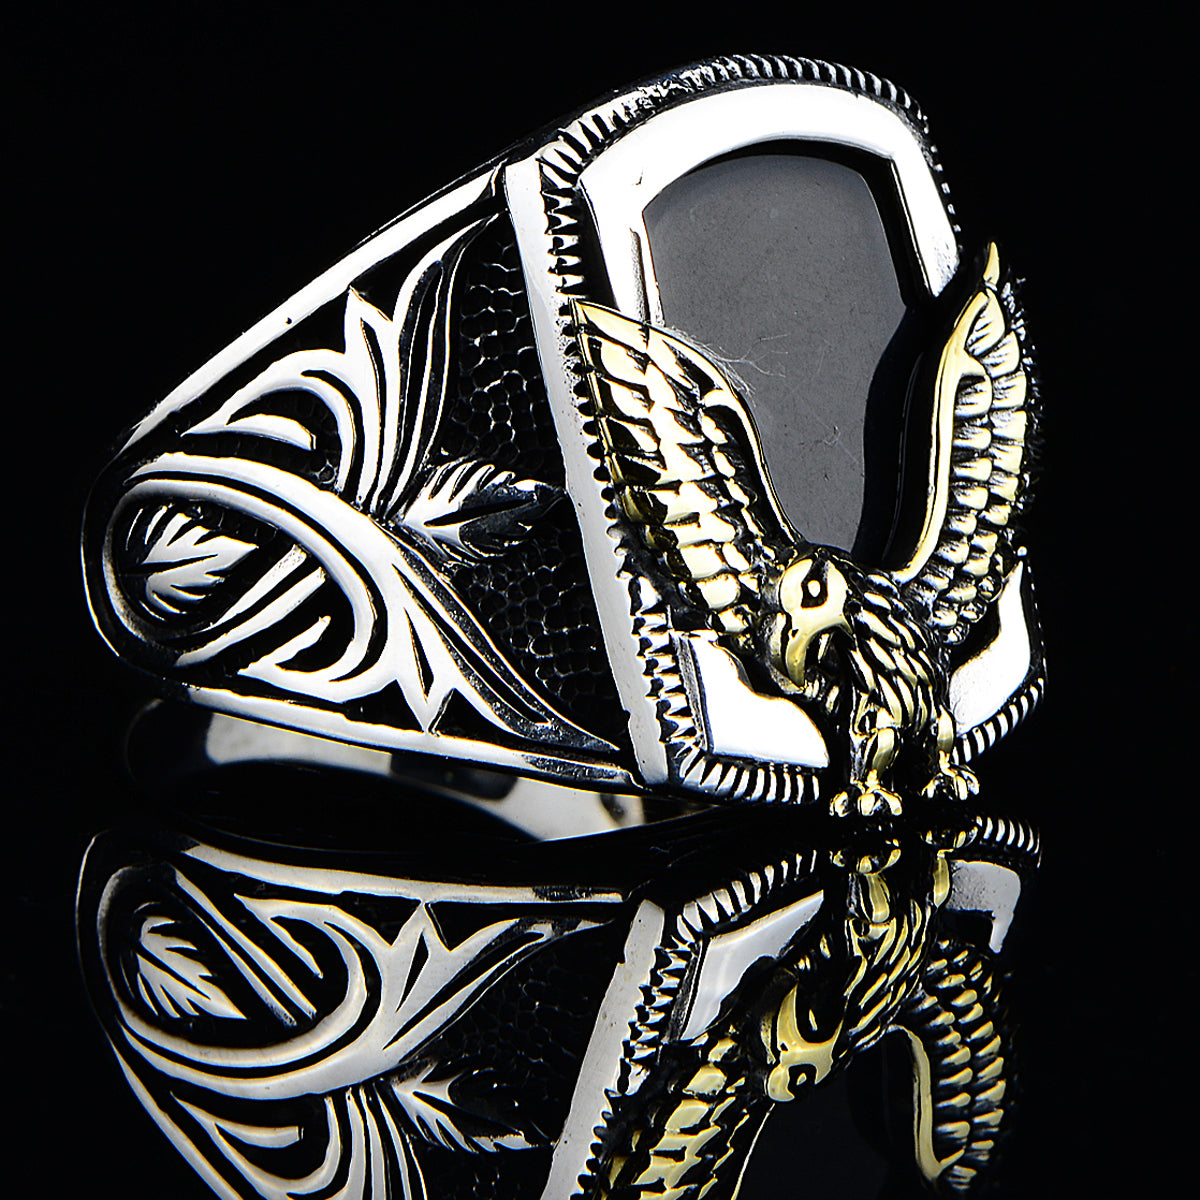 Silver Eagle Model Onyx Gemstone Ring